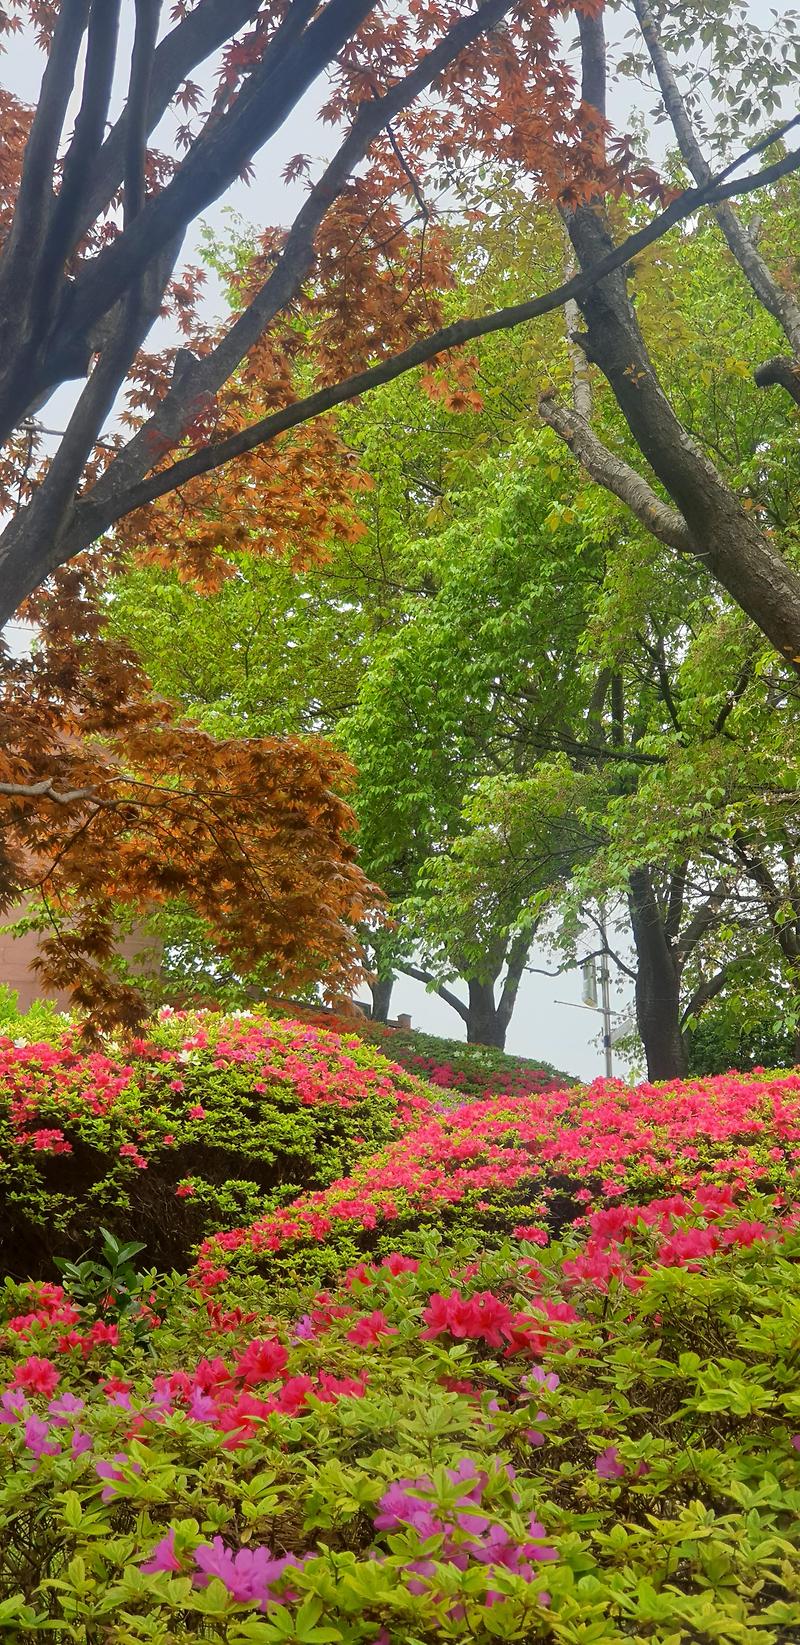 [여행스케치]인천 자유공원 봄꽃으로 화장한 풍경이 예쁘네요